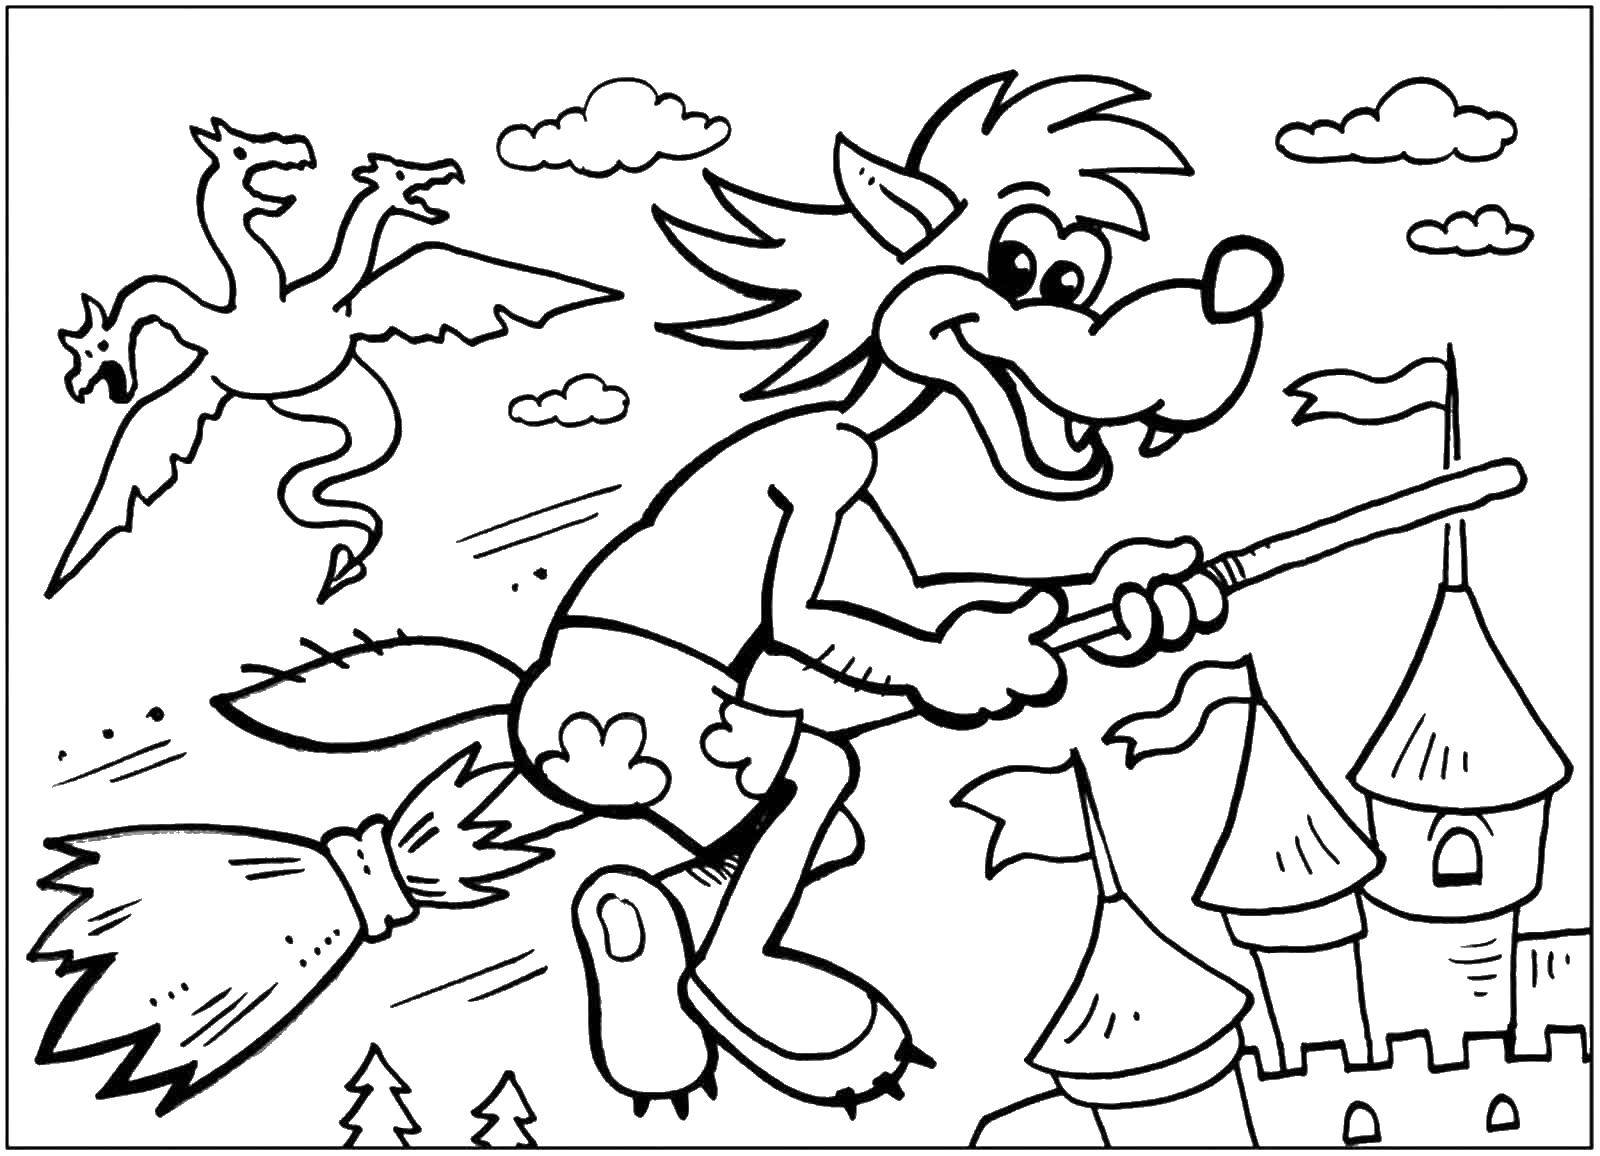 Раскраски к мультфильму Ну погоди, раскраски про волка и зайца для детей  Волк на метле